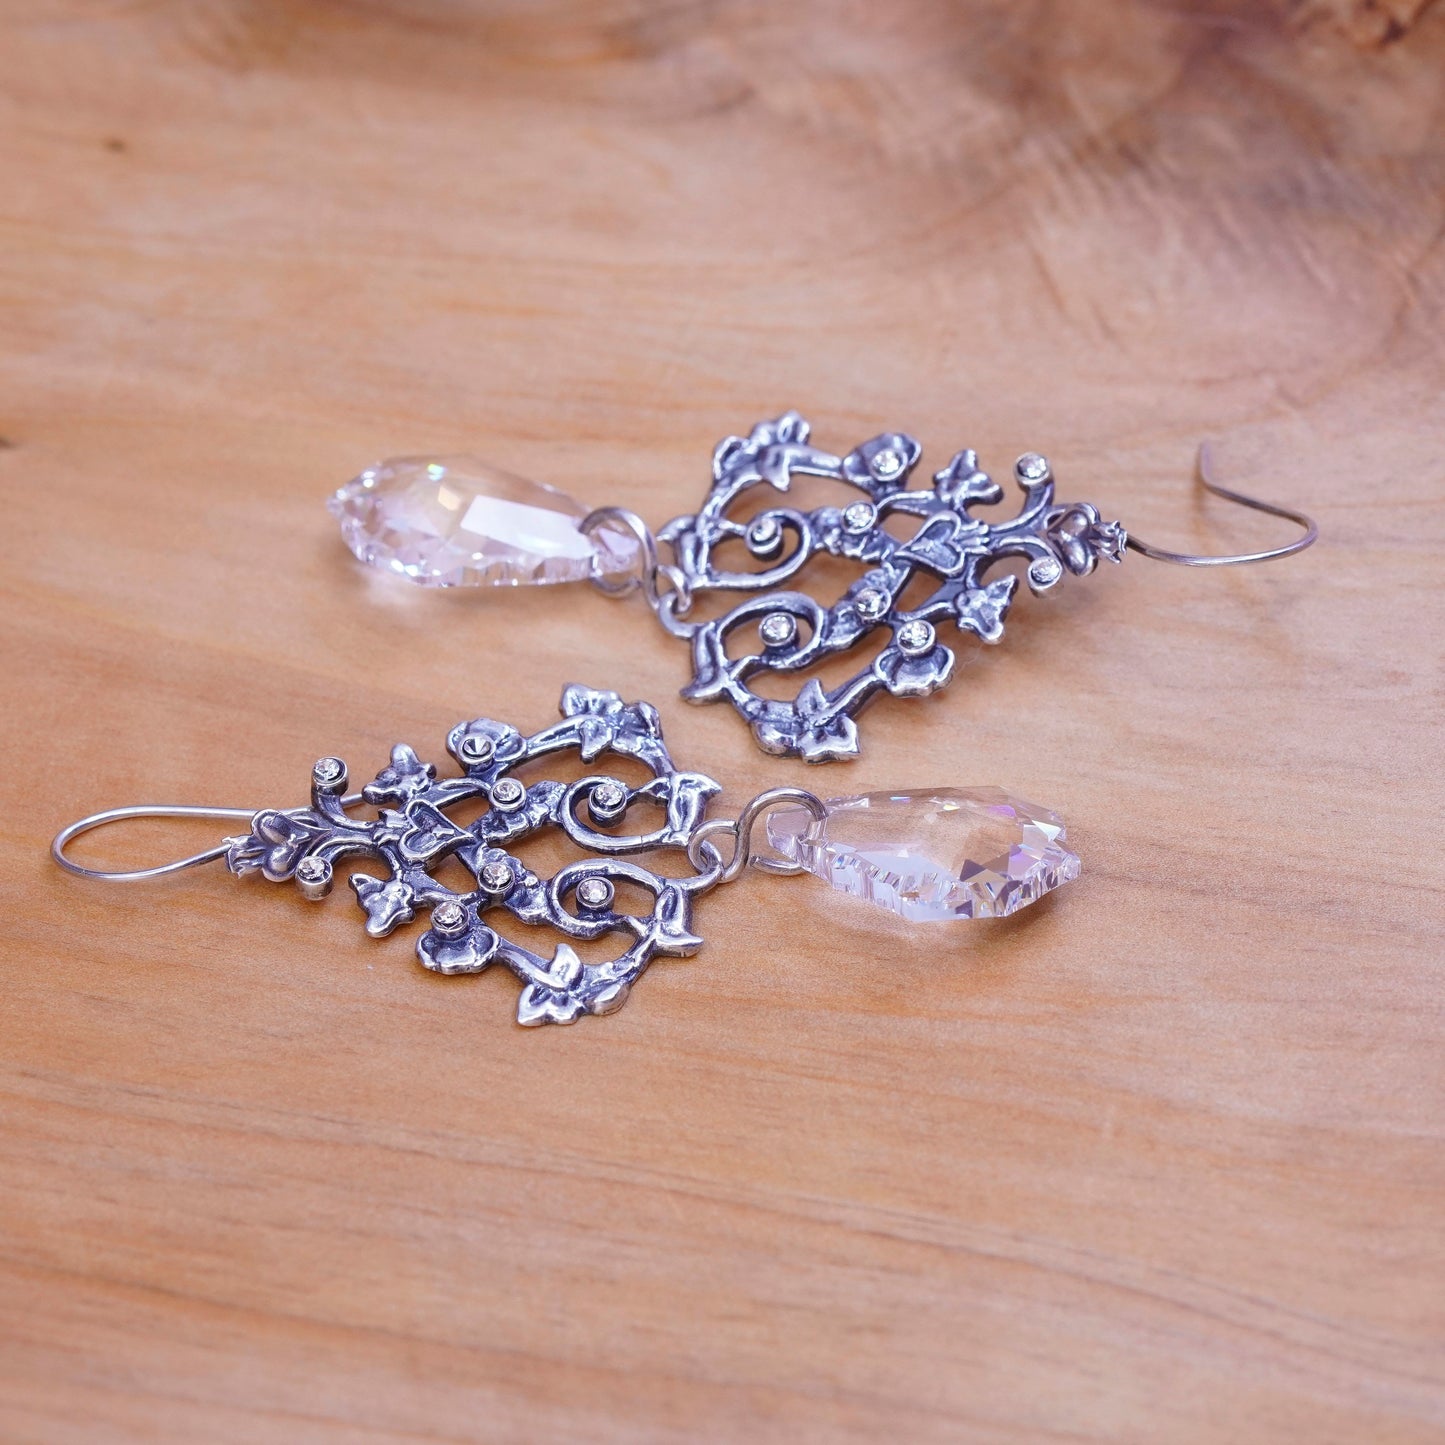 Vintage Sterling 925 silver handmade floral vine earrings with teardrop crystal